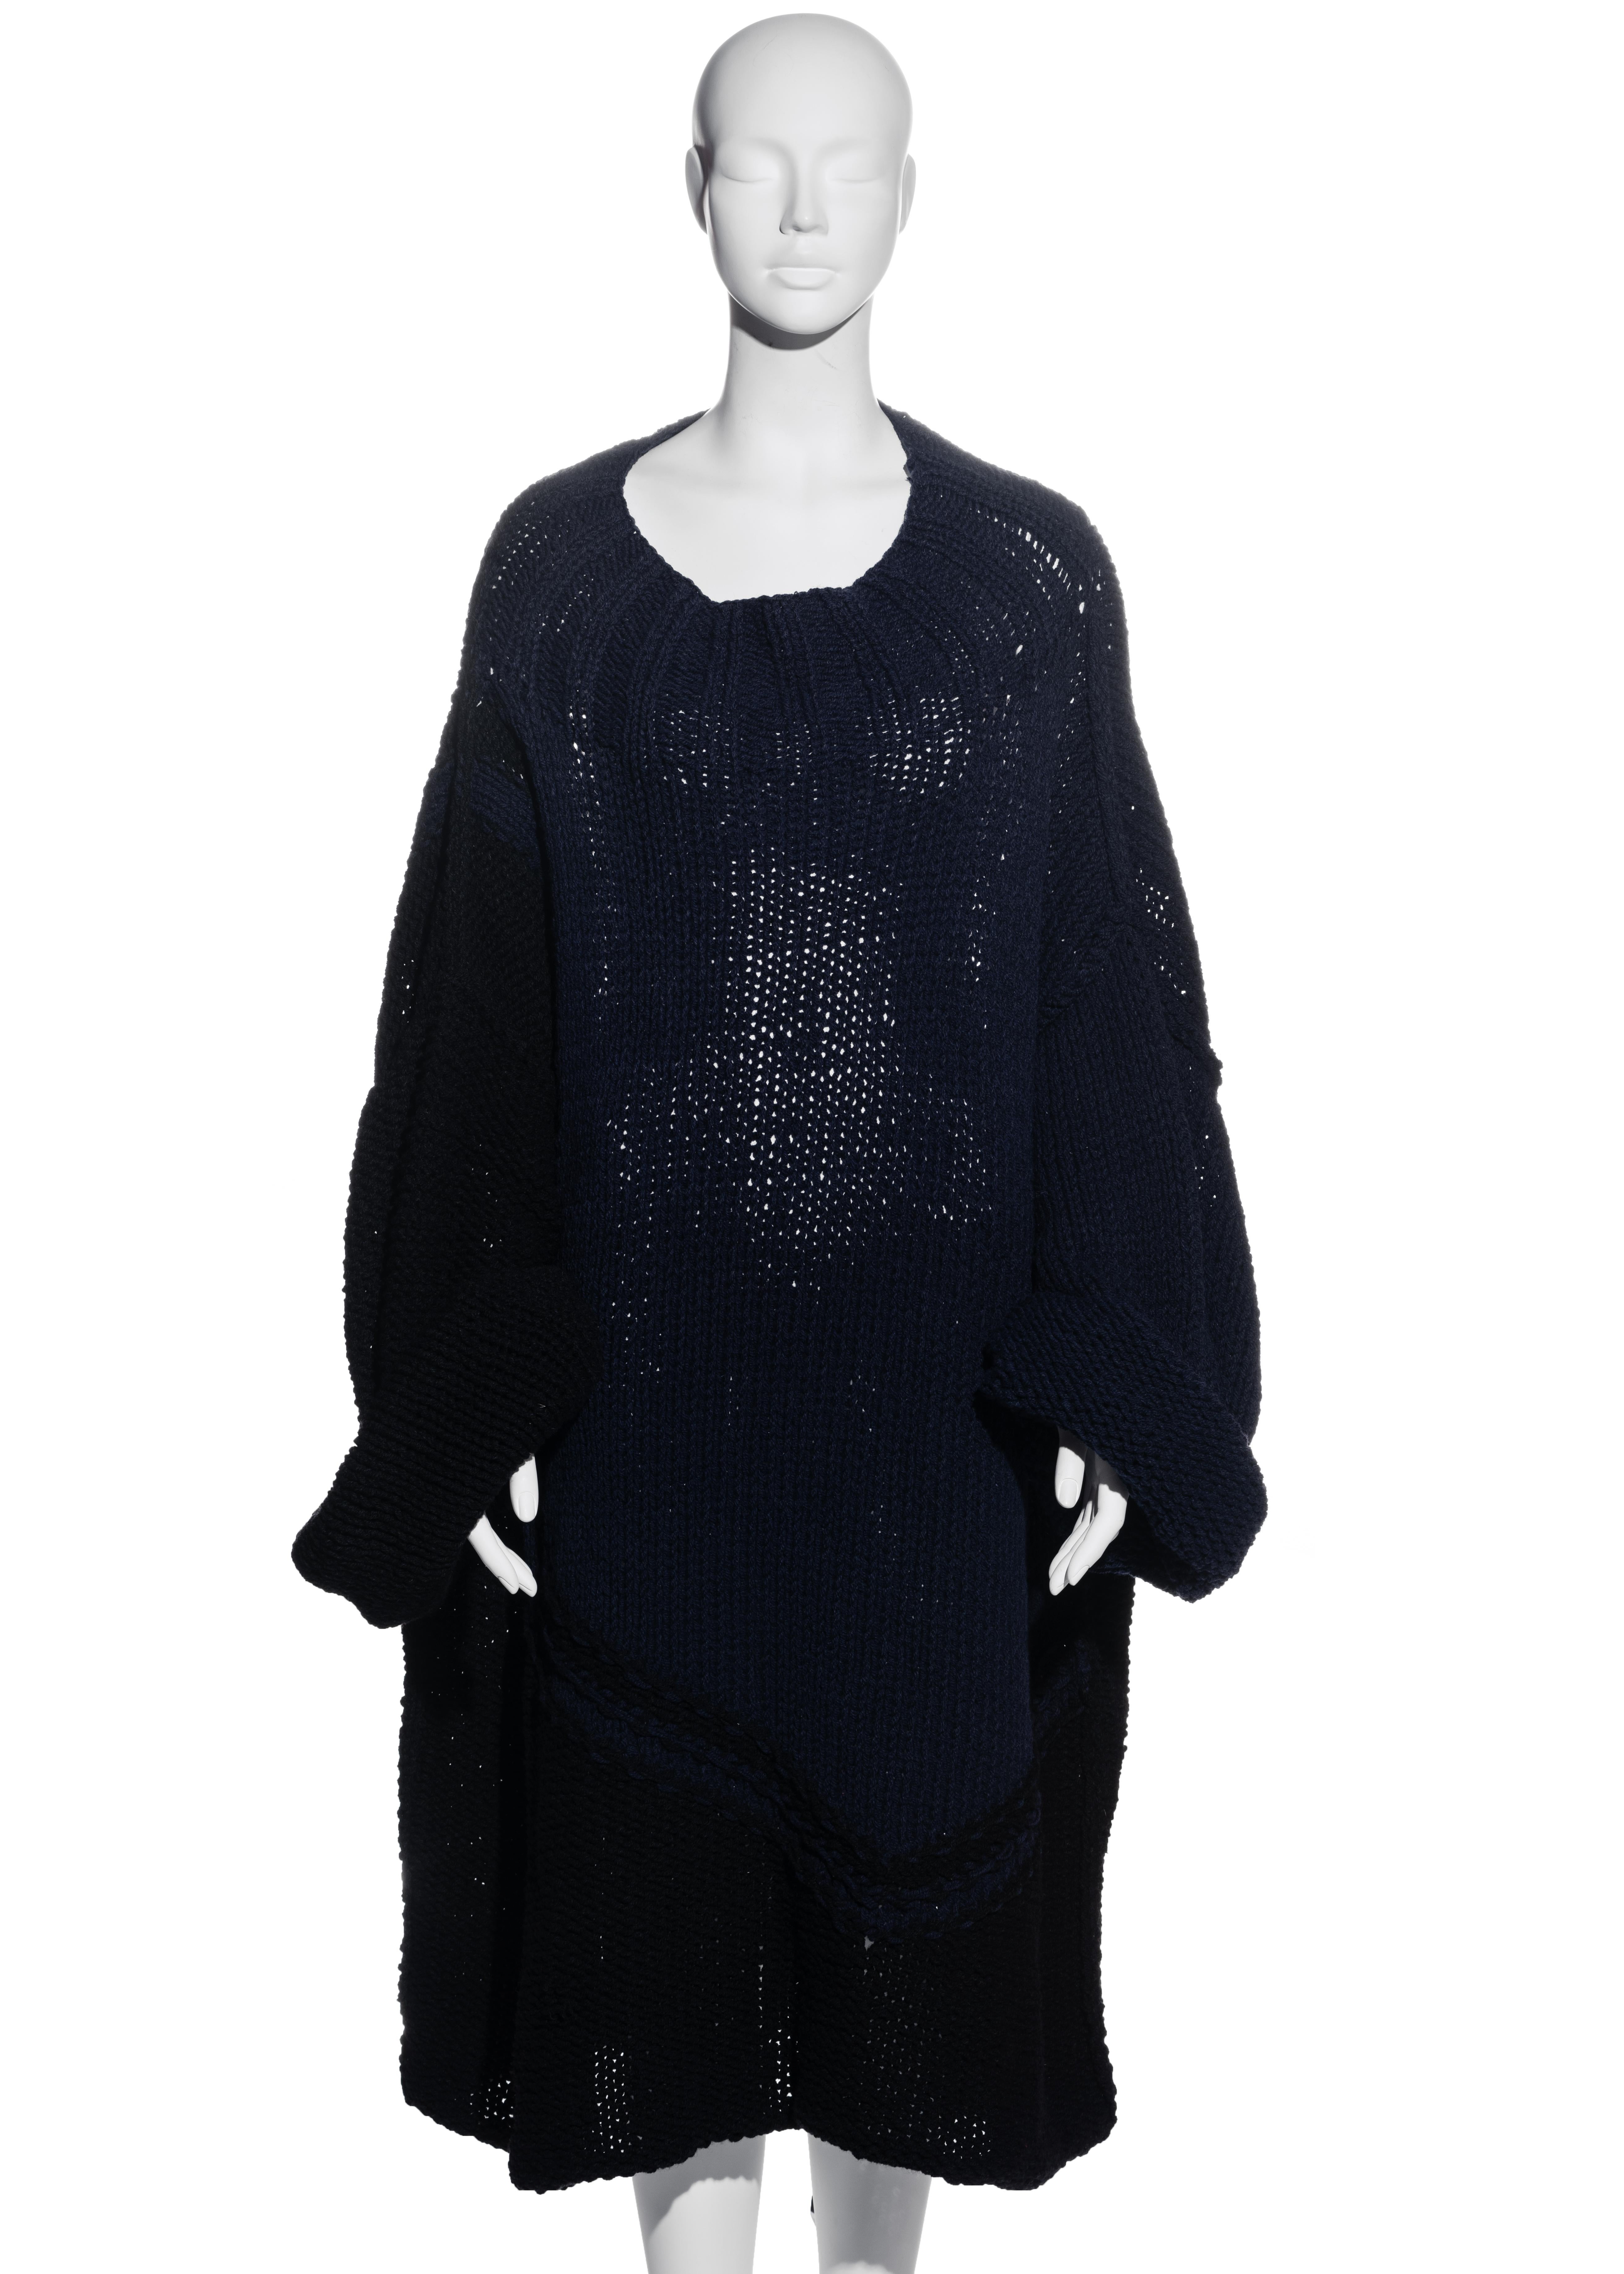 ▪ Yohji Yamamoto marineblauer und schwarzer Strickpullover
▪ 90% Wolle, 5% Baumwolle, 5% Polyurethan 
▪ Extrem übergroße Passform 
▪ Etikettierte Größe mittel 
▪ Herbst-Winter 1984 